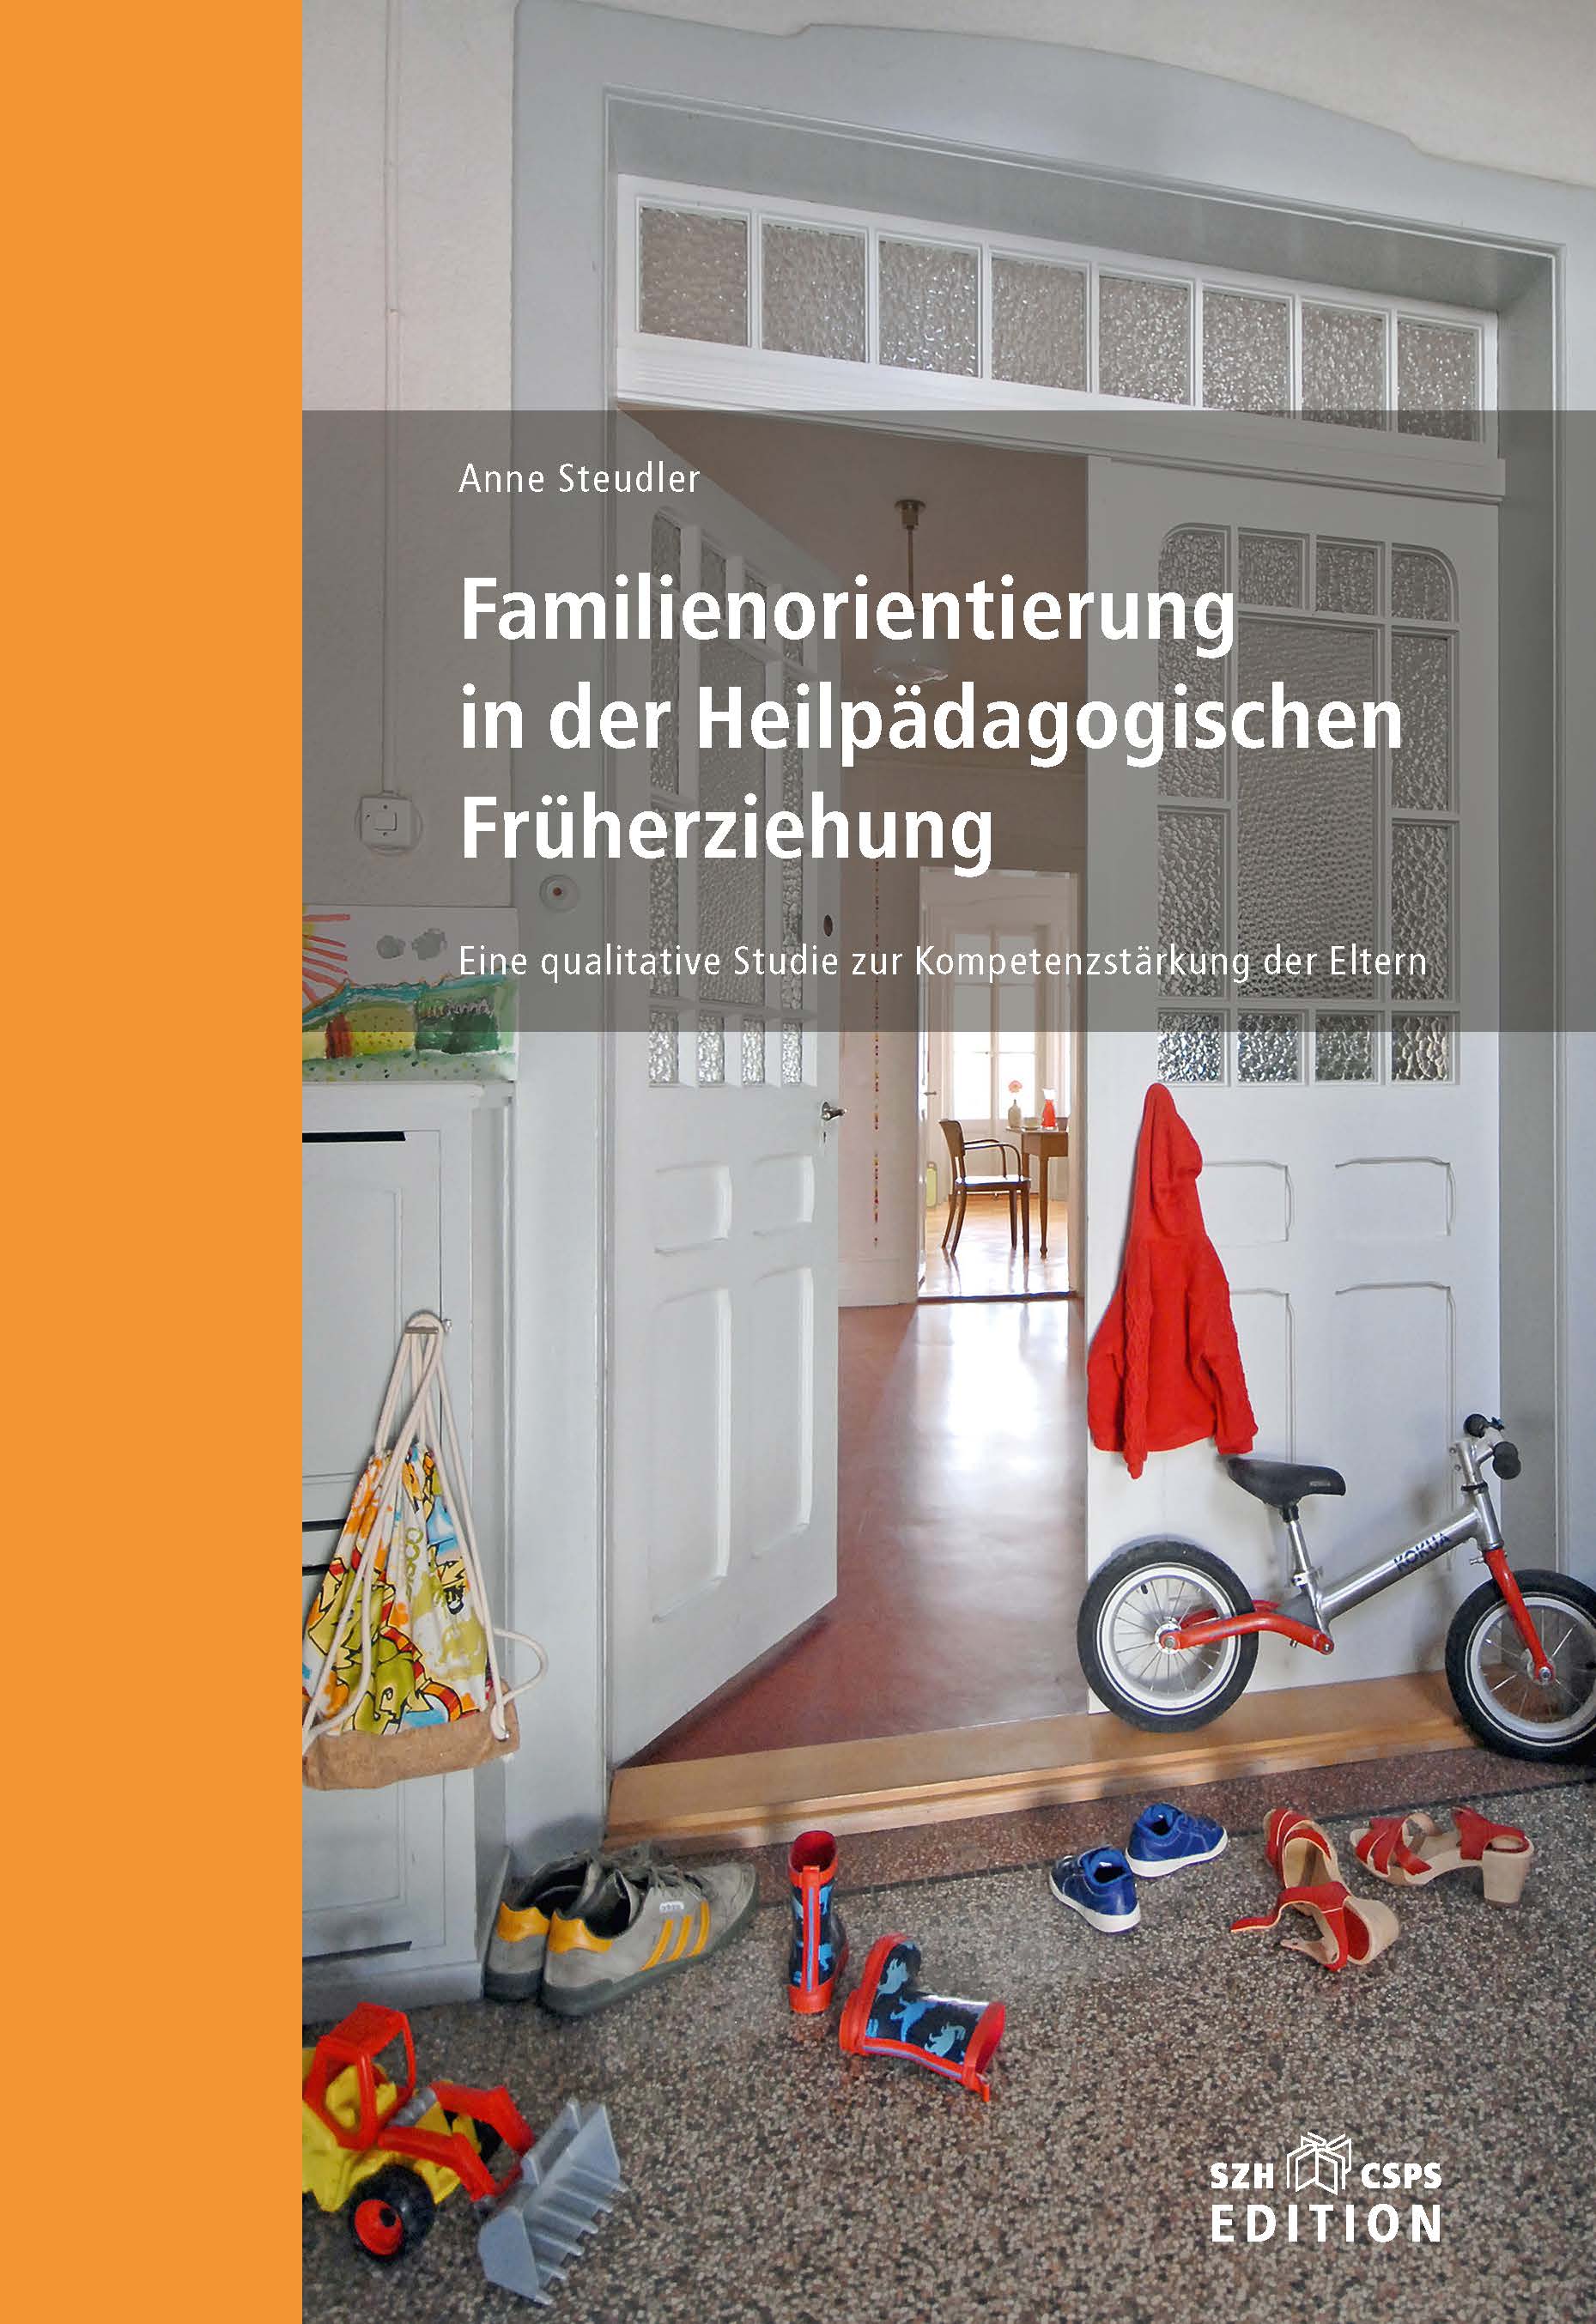  L’image montre la couverture du livre. On y voit une photo d’un appartement avec des jouets allongés sur le sol. 